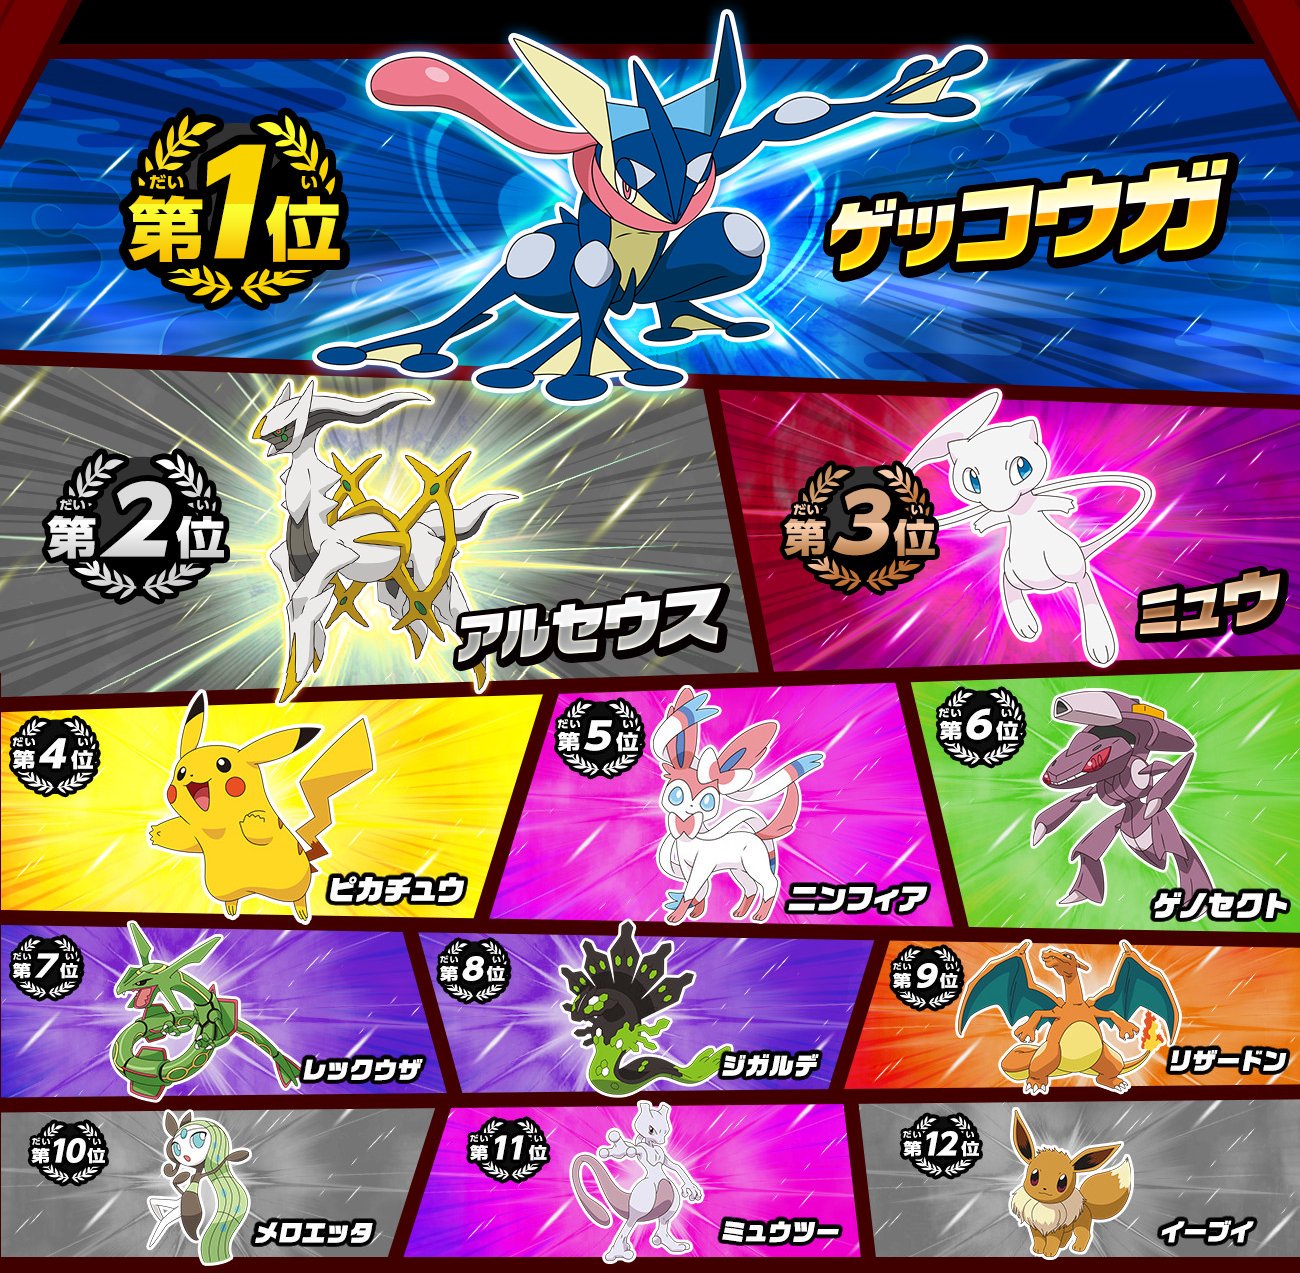 Serebii Net Serebii Note The Top 100 Pokemon In The Pokemon Elections In Japan T Co Ov6diia7ub